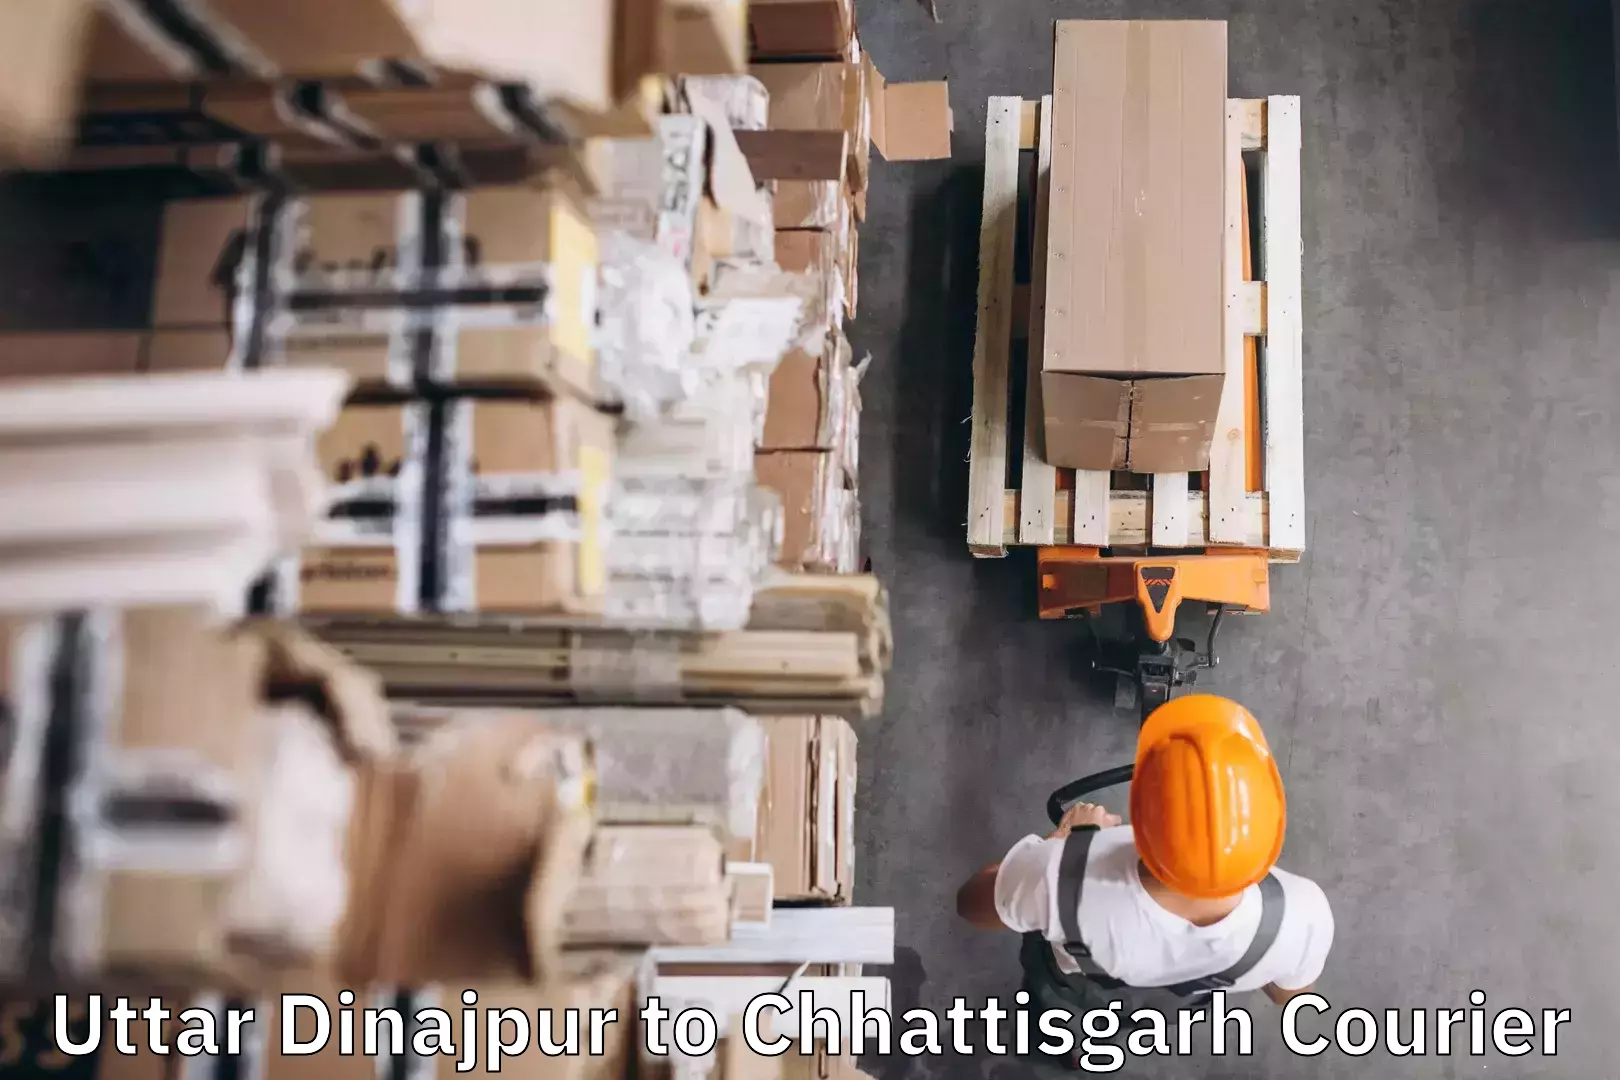 Baggage transport innovation Uttar Dinajpur to Chhattisgarh